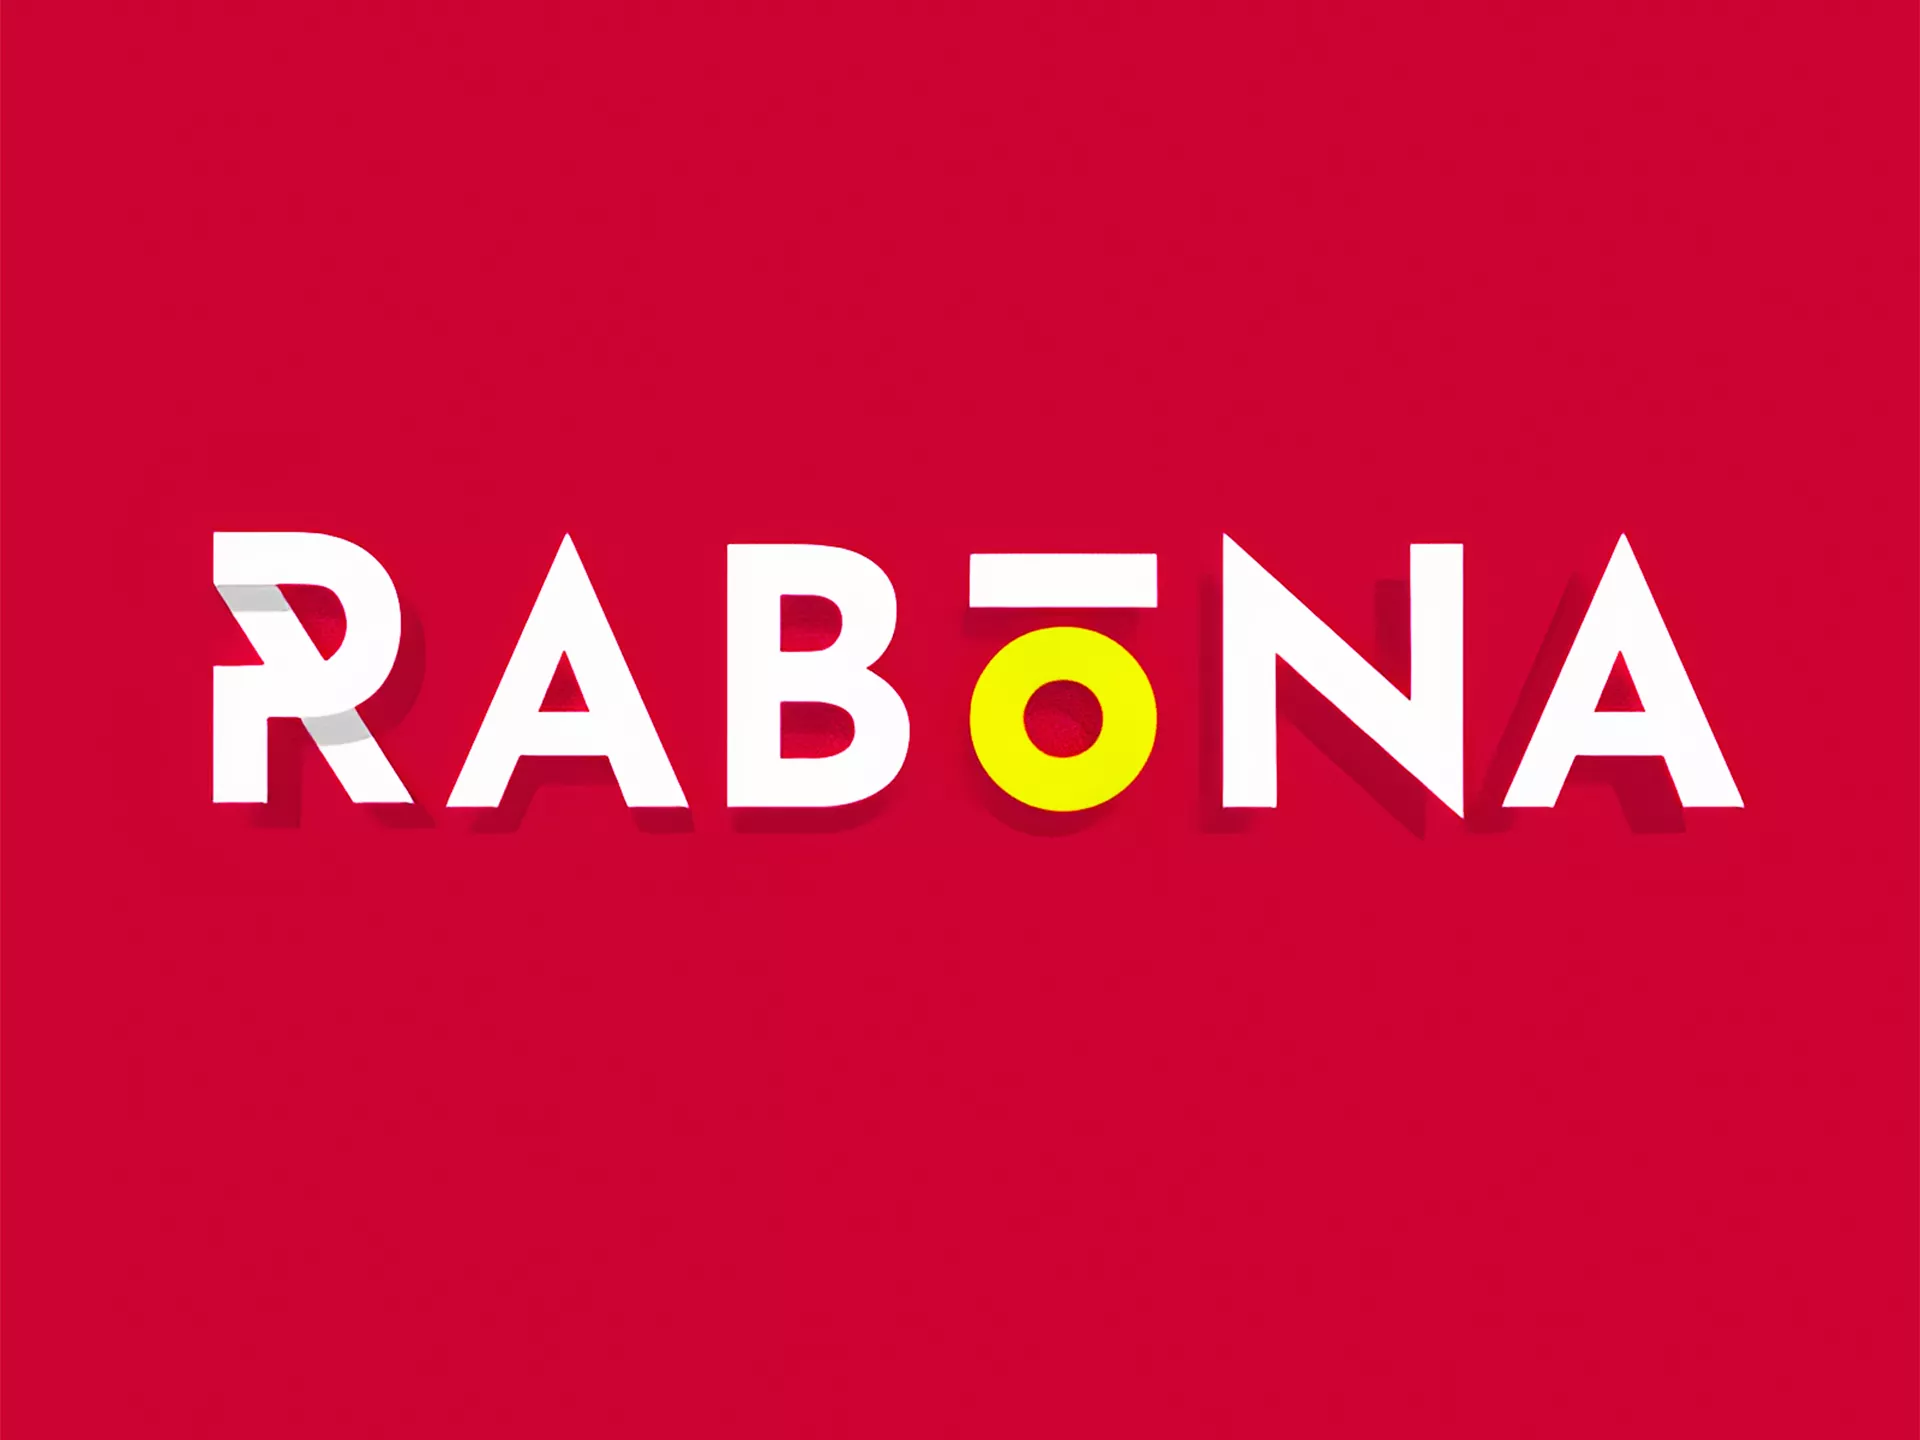 Rabona बोनस प्राप्त करें और रबोना पर आसानी से लाइव क्रिकेट पर दांव लगाएं।